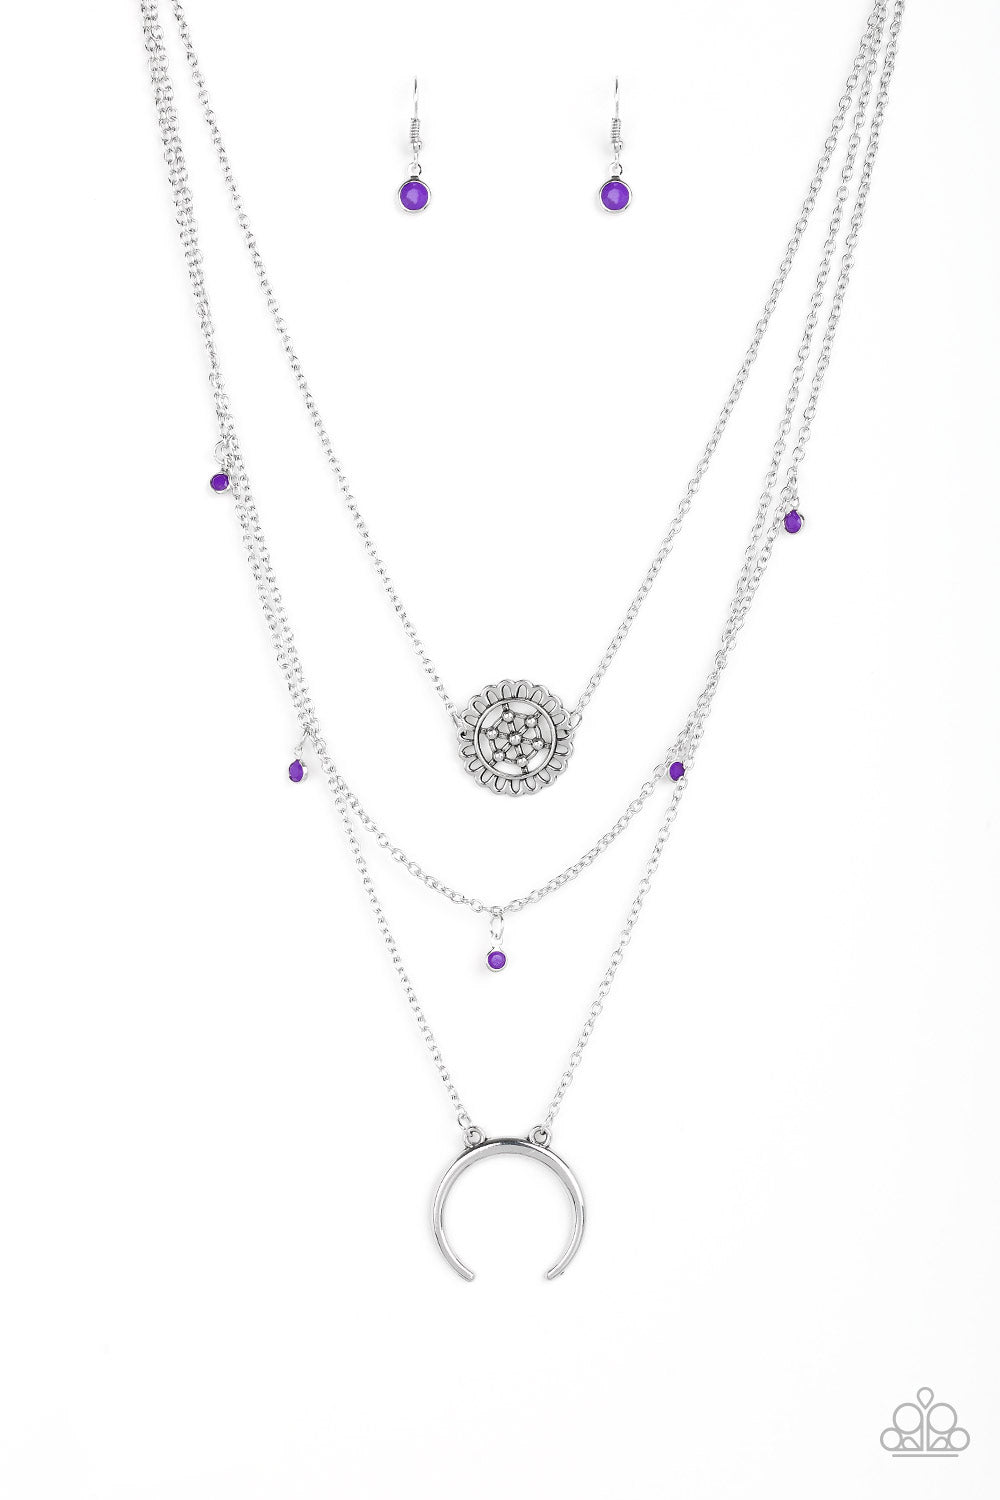 Lunar Lotus - Purple Necklace Set - Princess Glam Shop